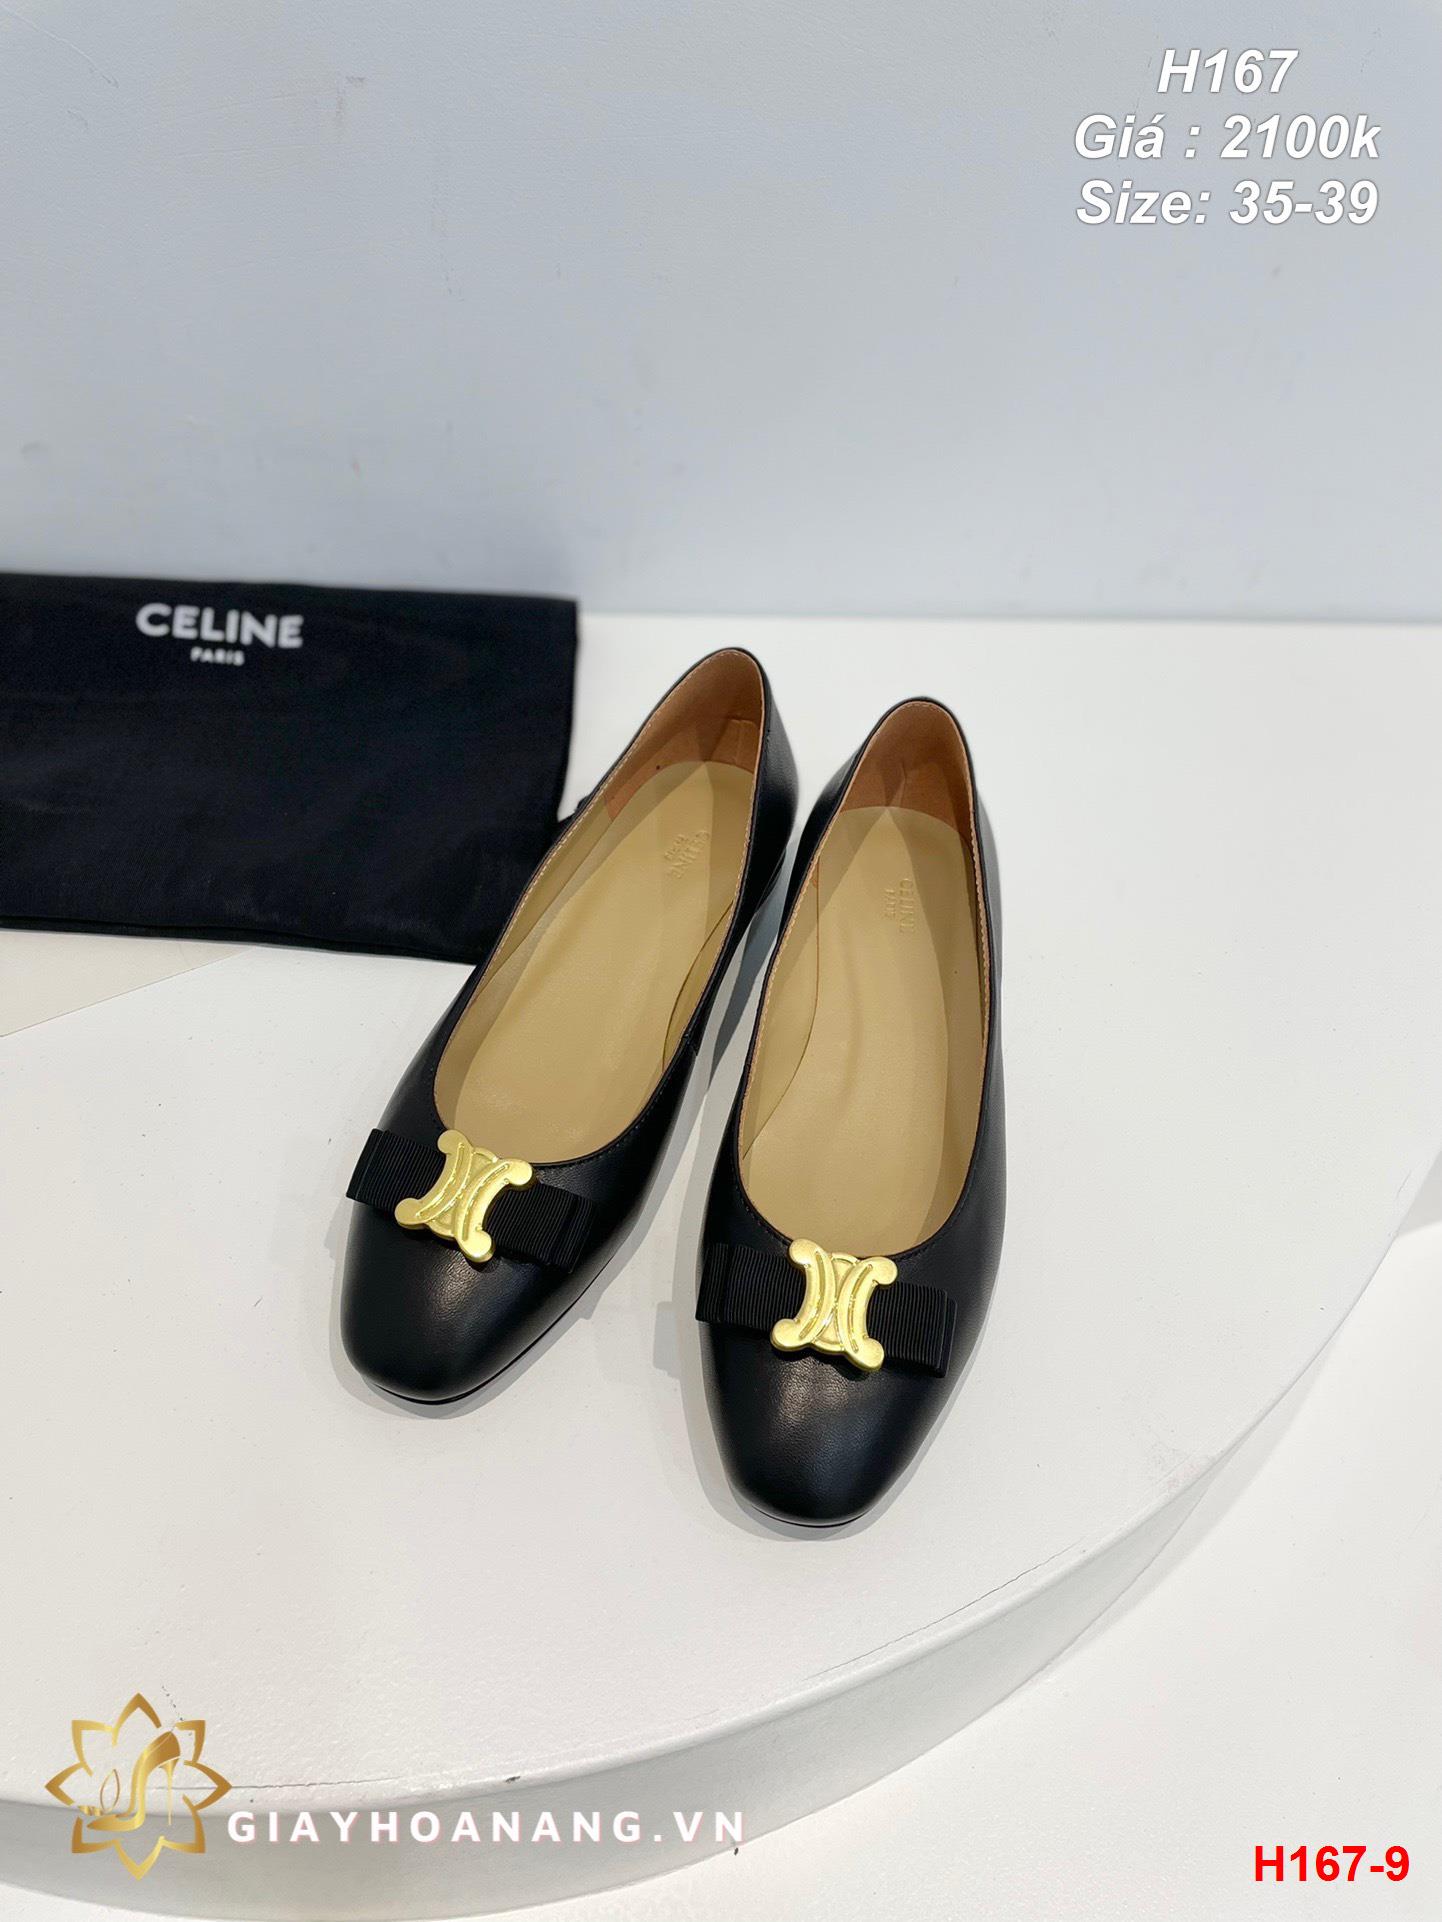 H167-9 Celine giày bệt siêu cấp